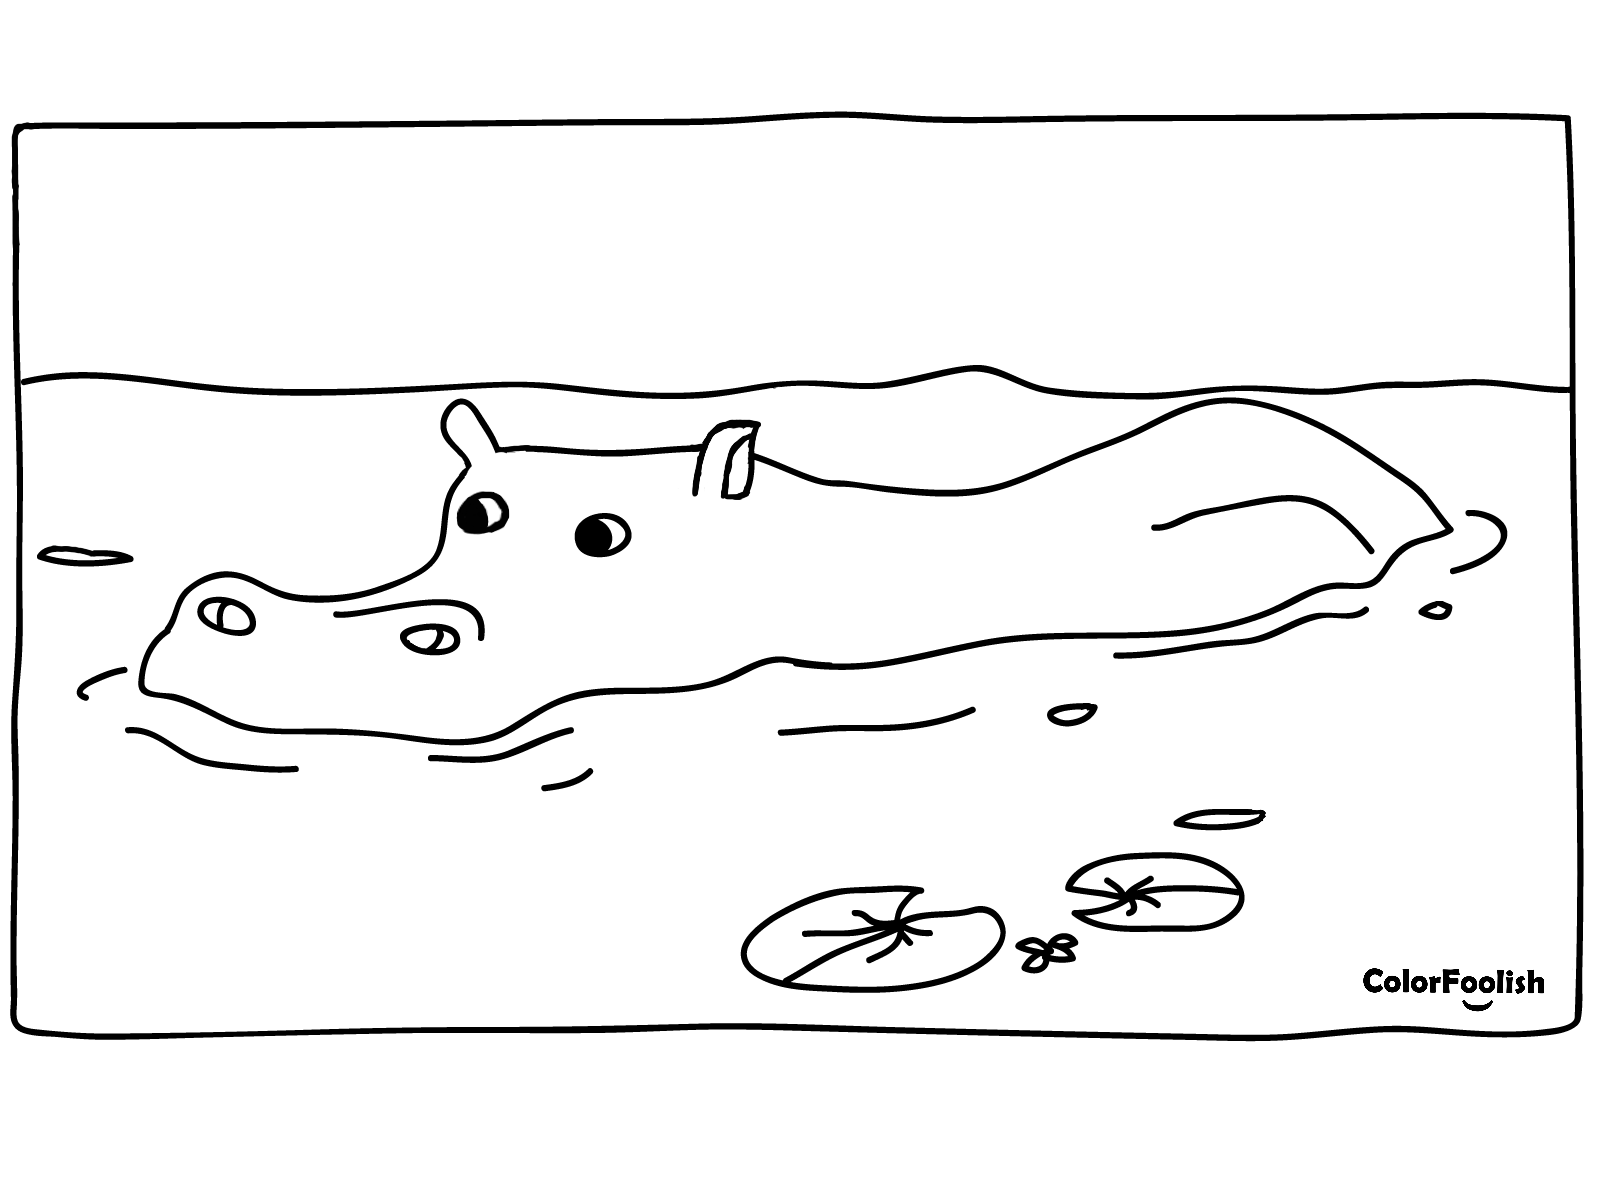 Dibujo para colorear de un hipopótamo nadando